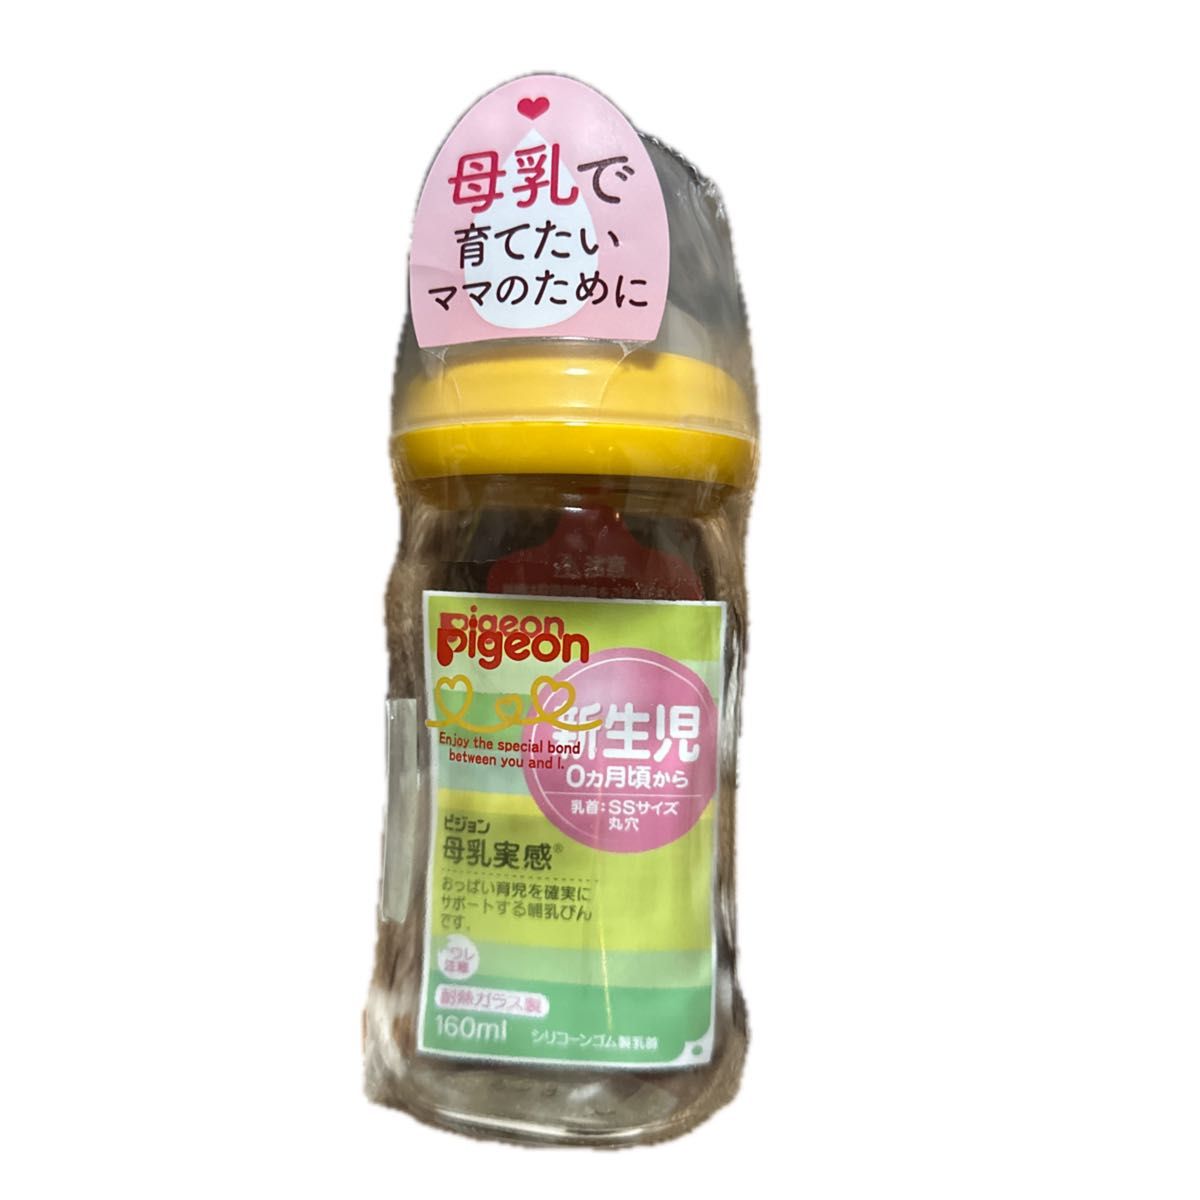 商品名： Pigeon（ピジョン）の耐熱ガラス製母乳実感哺乳びん 160mL - オレンジイエロー色